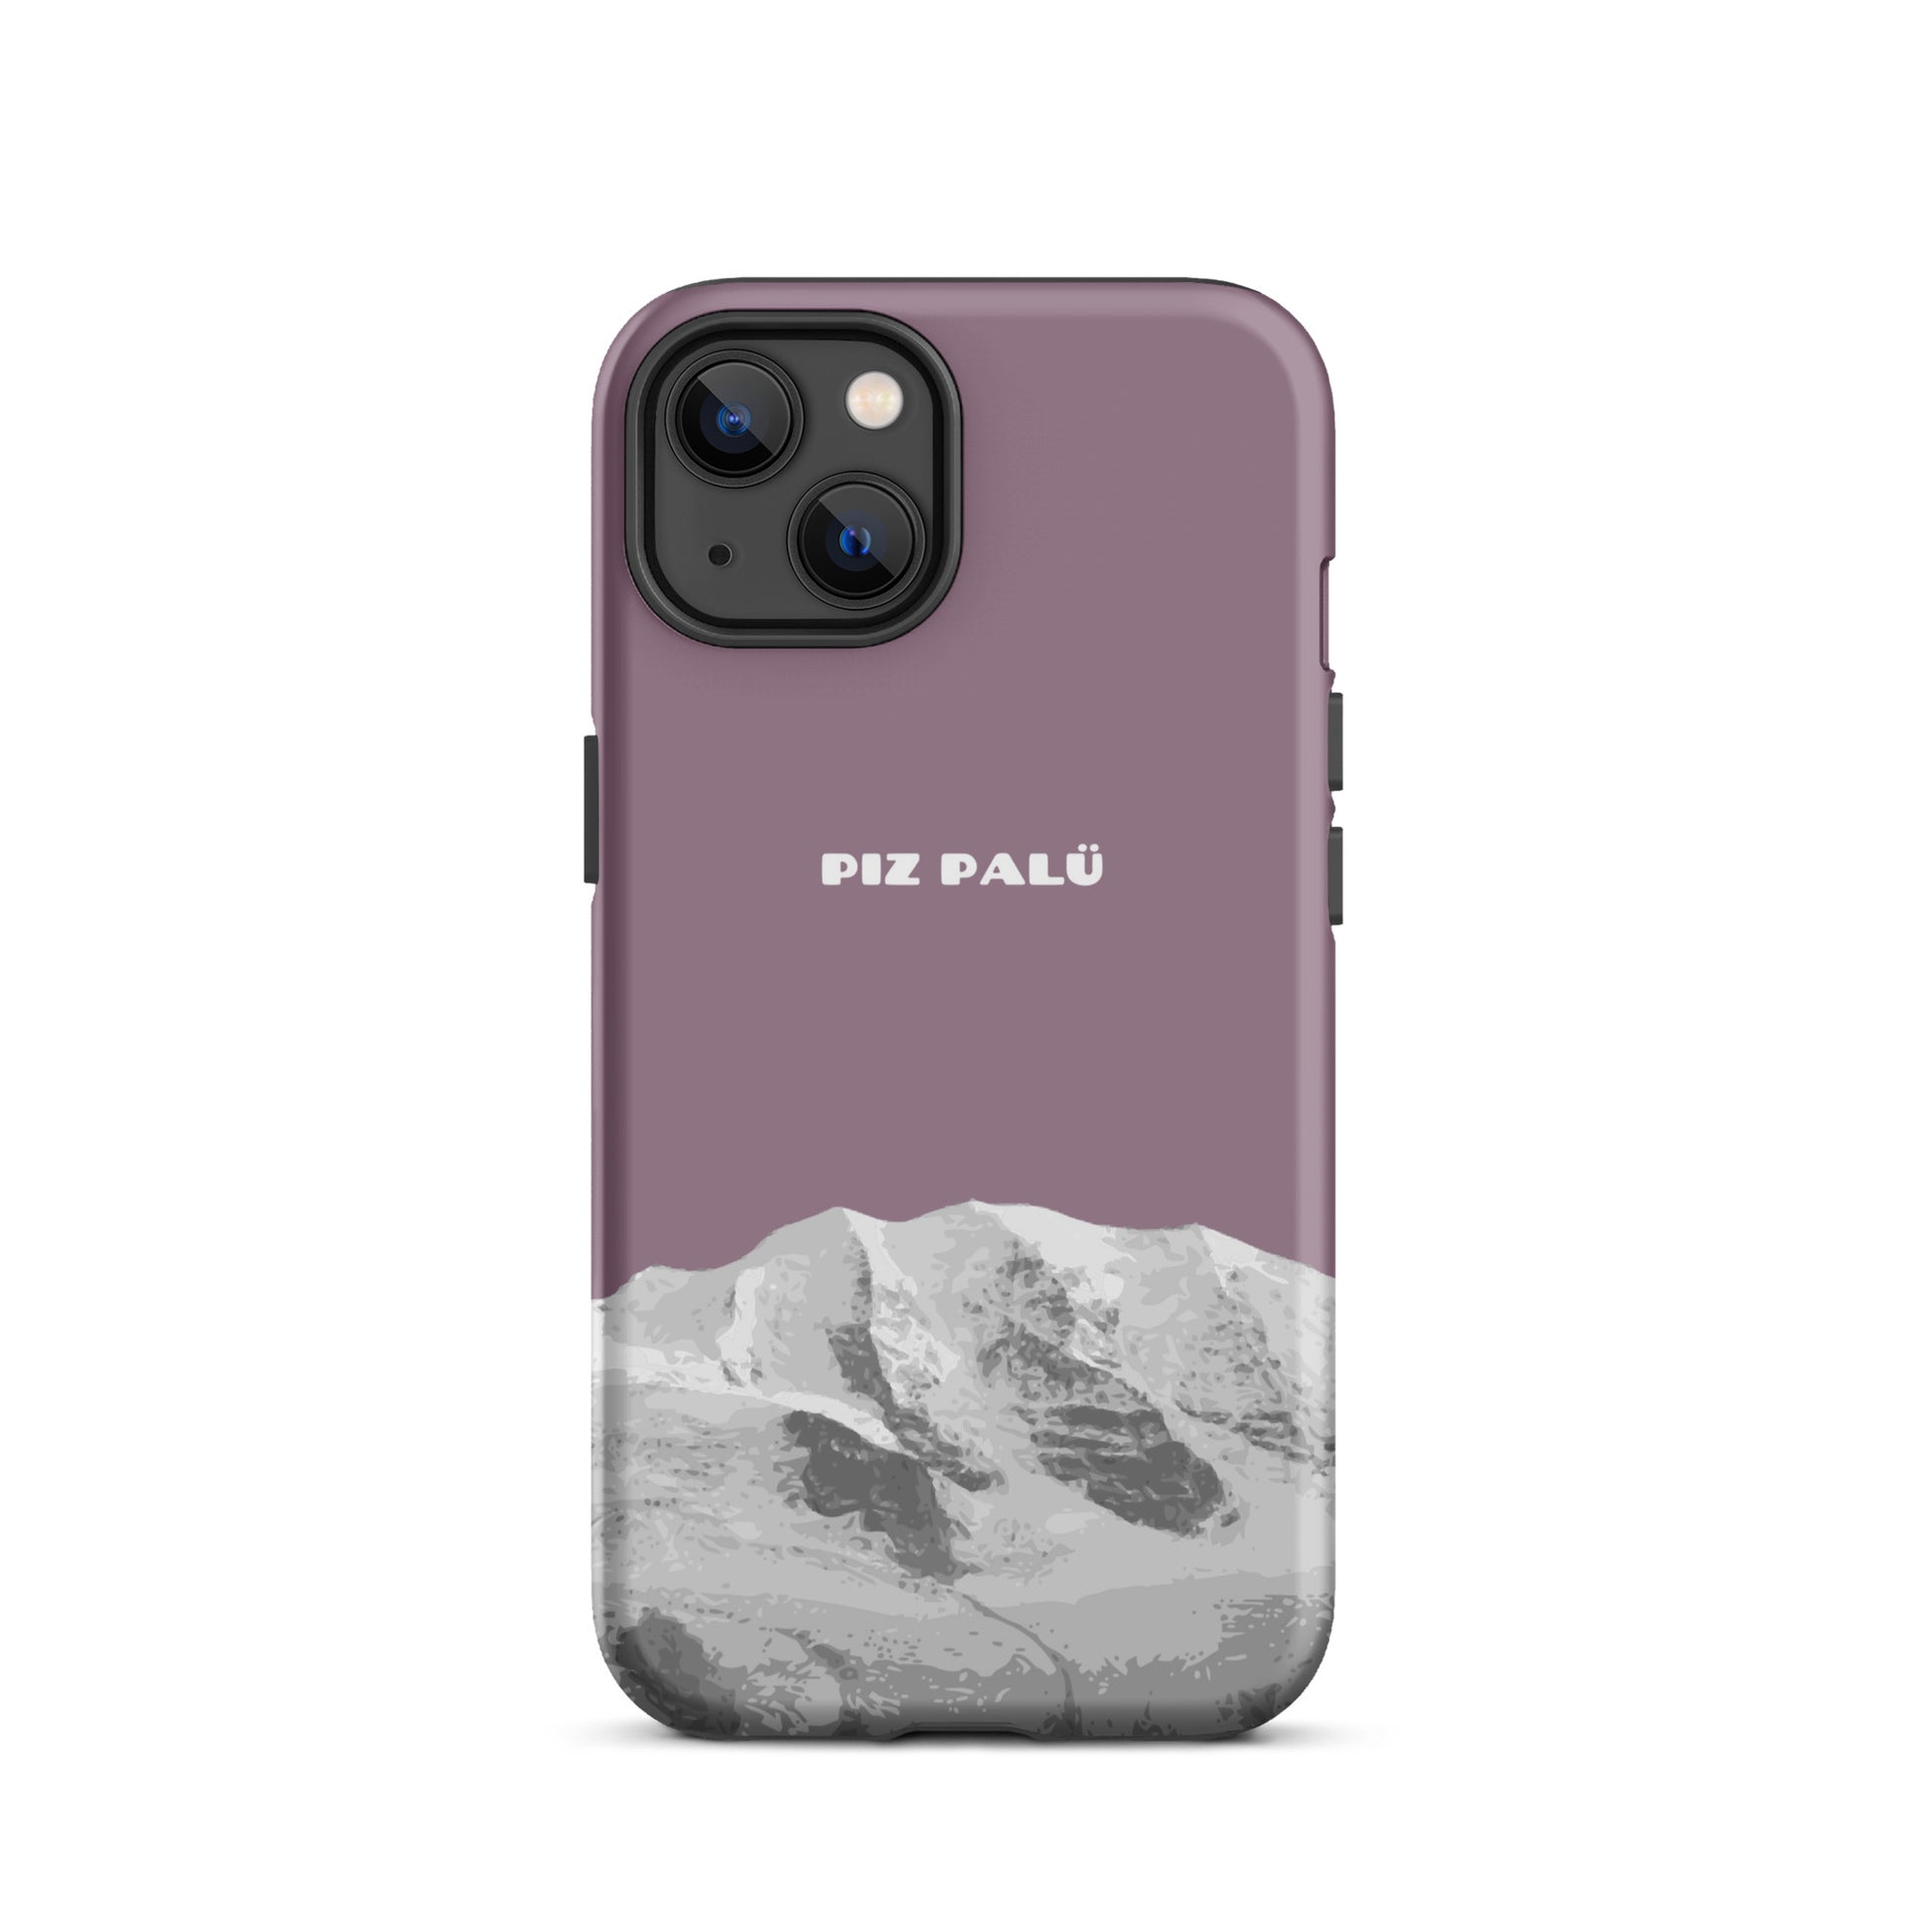 Hülle für das iPhone 13 von Apple in der Farbe Pastellviolett, dass den Piz Palü in Graubünden zeigt.